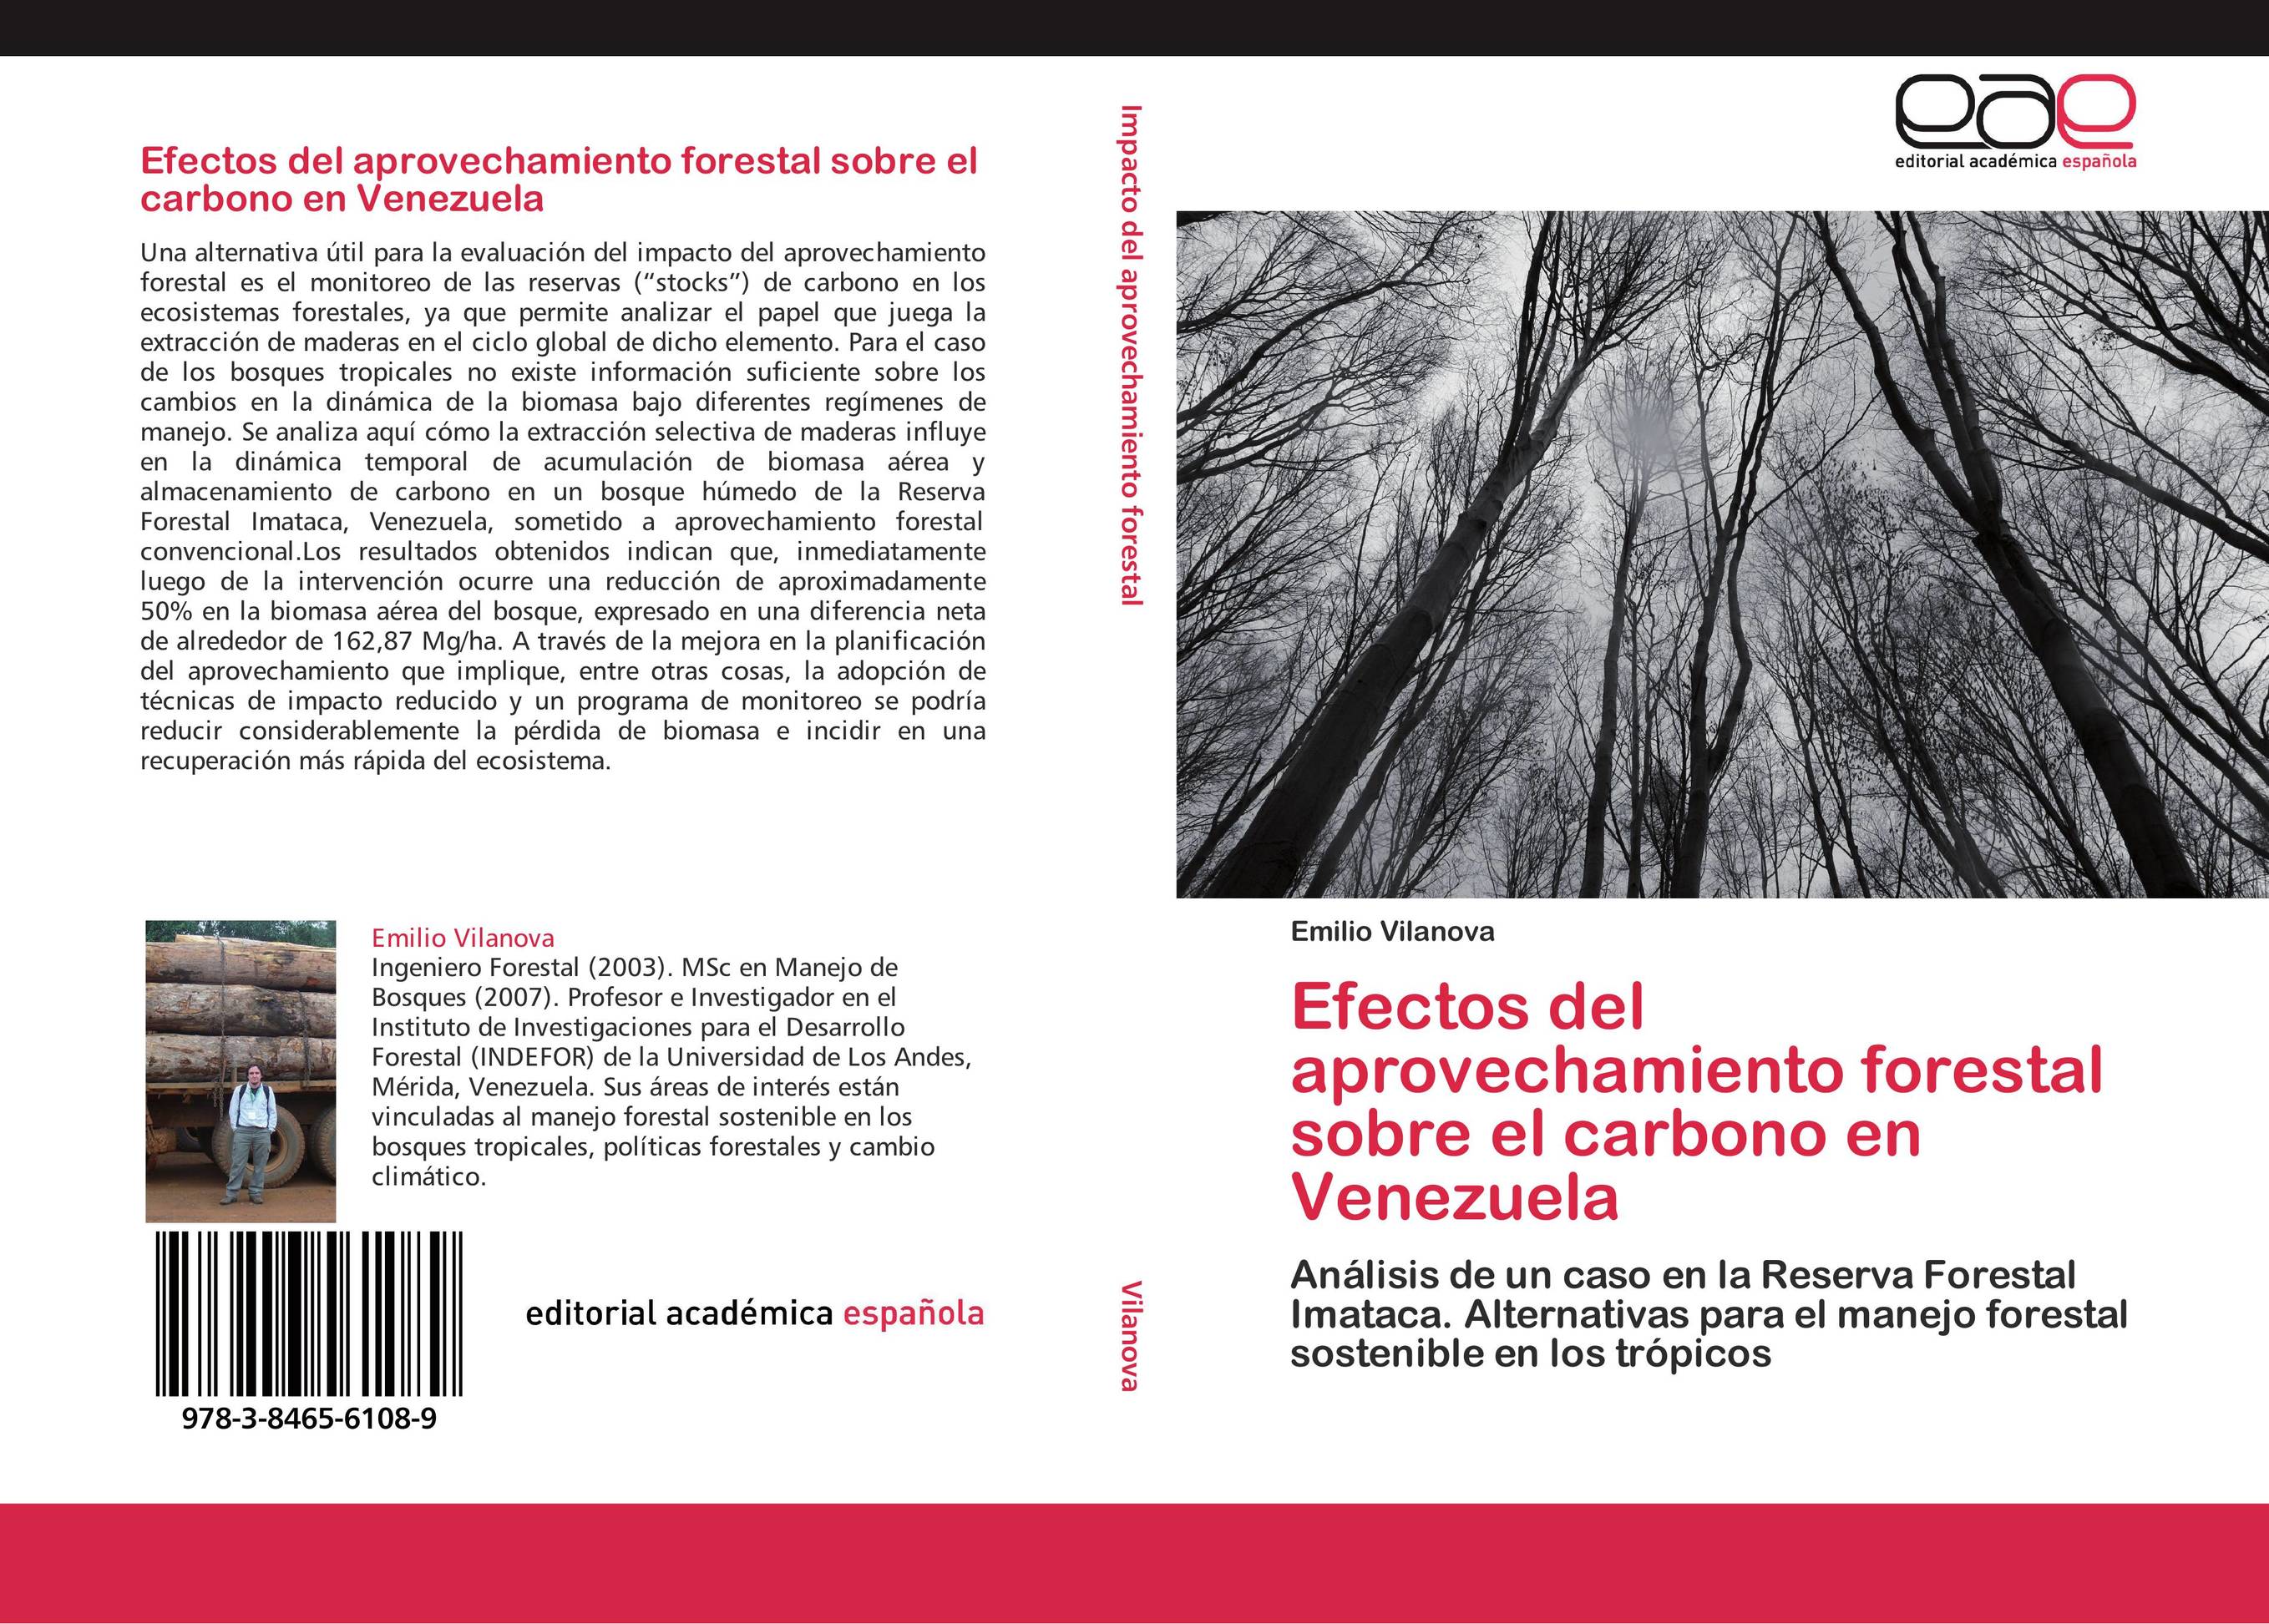 Efectos del aprovechamiento forestal sobre el carbono en Venezuela